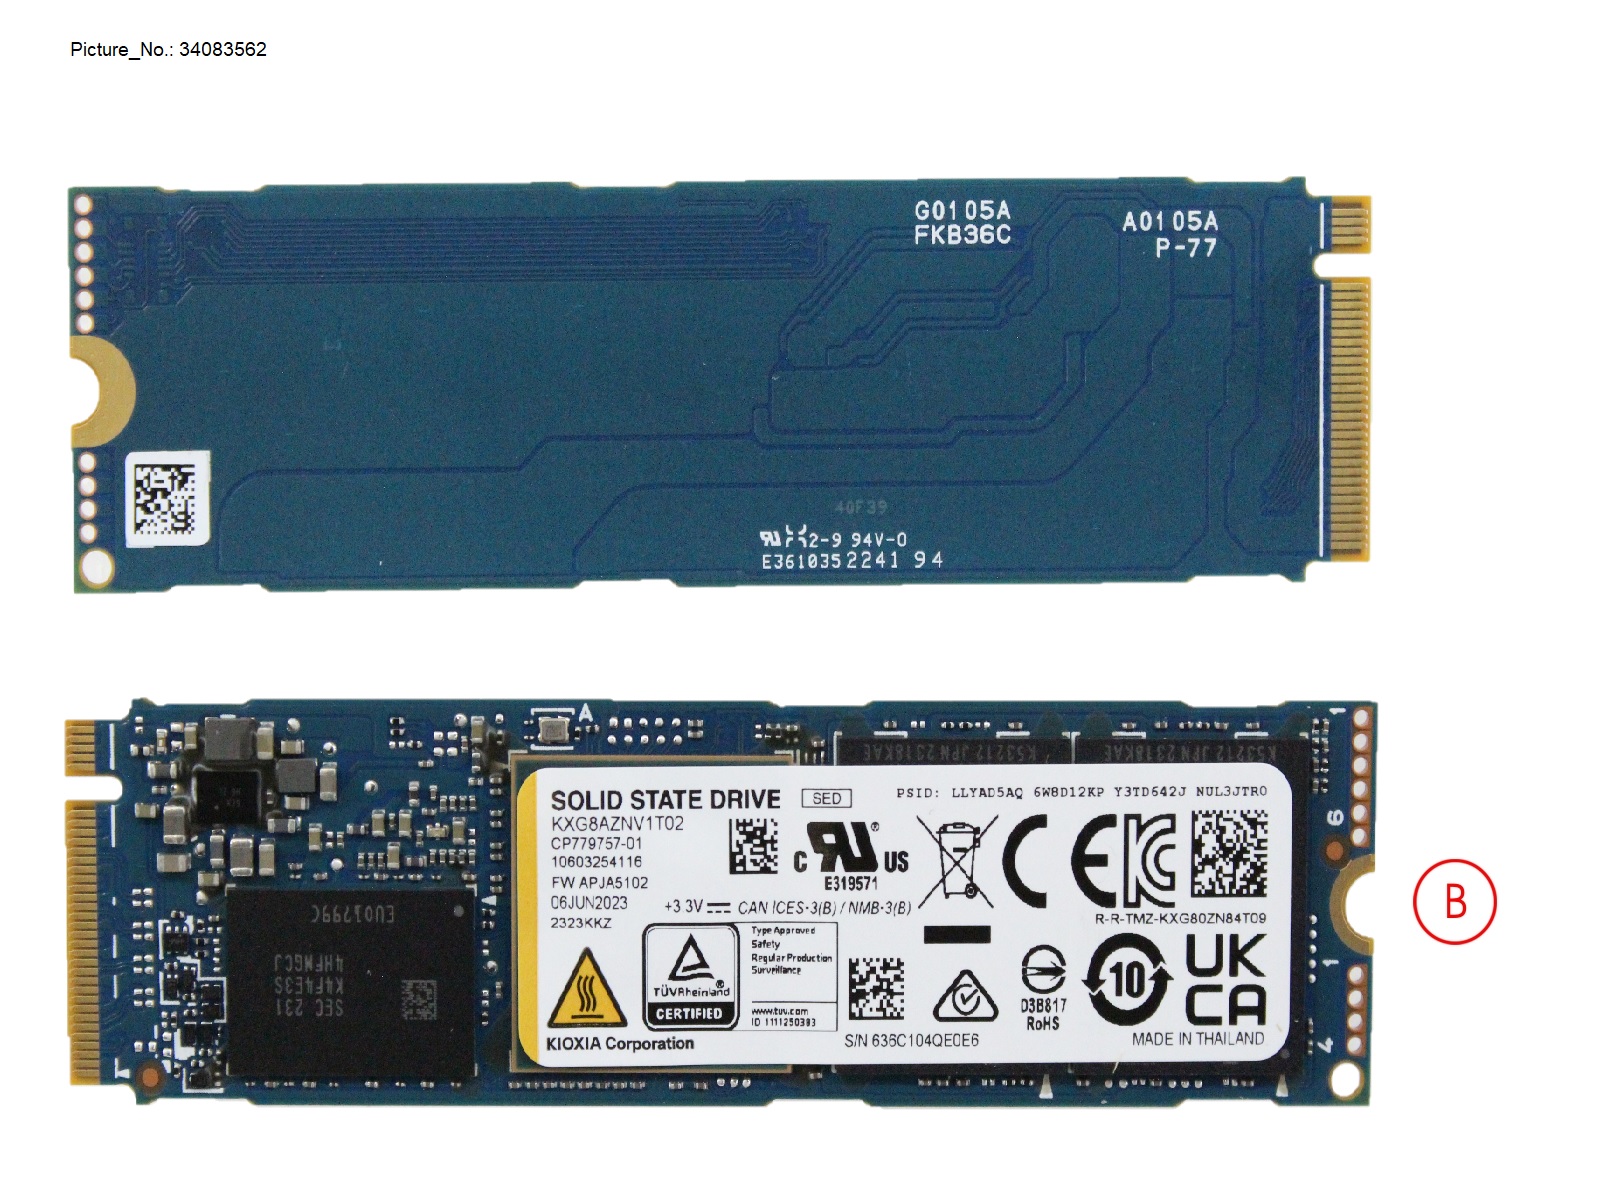 SSD PCIE M.2 XG8 G4 1TB (SED)